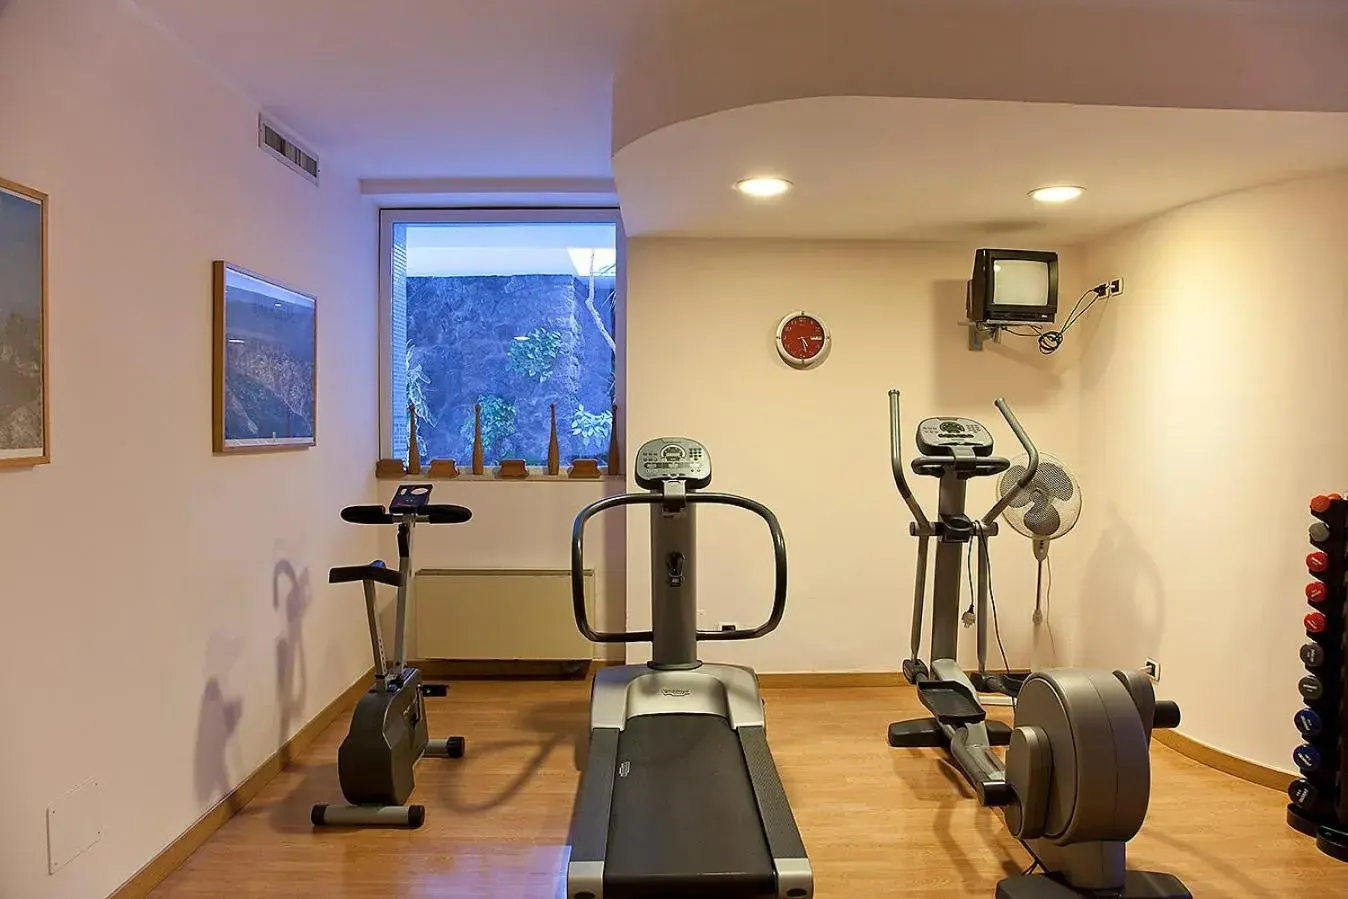 Fitness centre/facilities, Fitness Center/Facilities in Grand Hotel Il Moresco